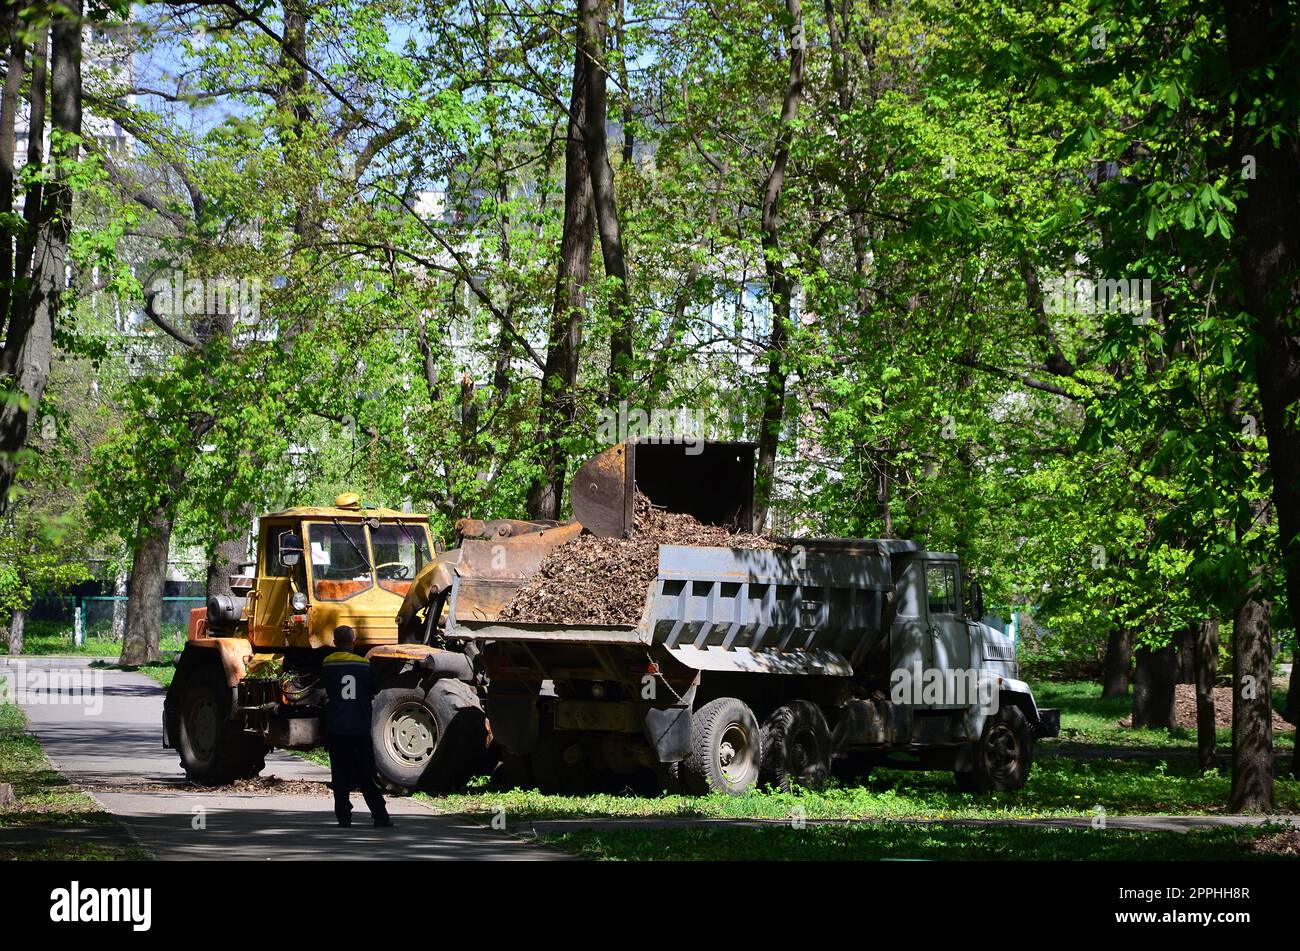 Il team di miglioramento della città rimuove le foglie cadute nel parco con un escavatore e un camion. Regolare lavoro stagionale per migliorare i luoghi pubblici per la ricreazione Foto Stock